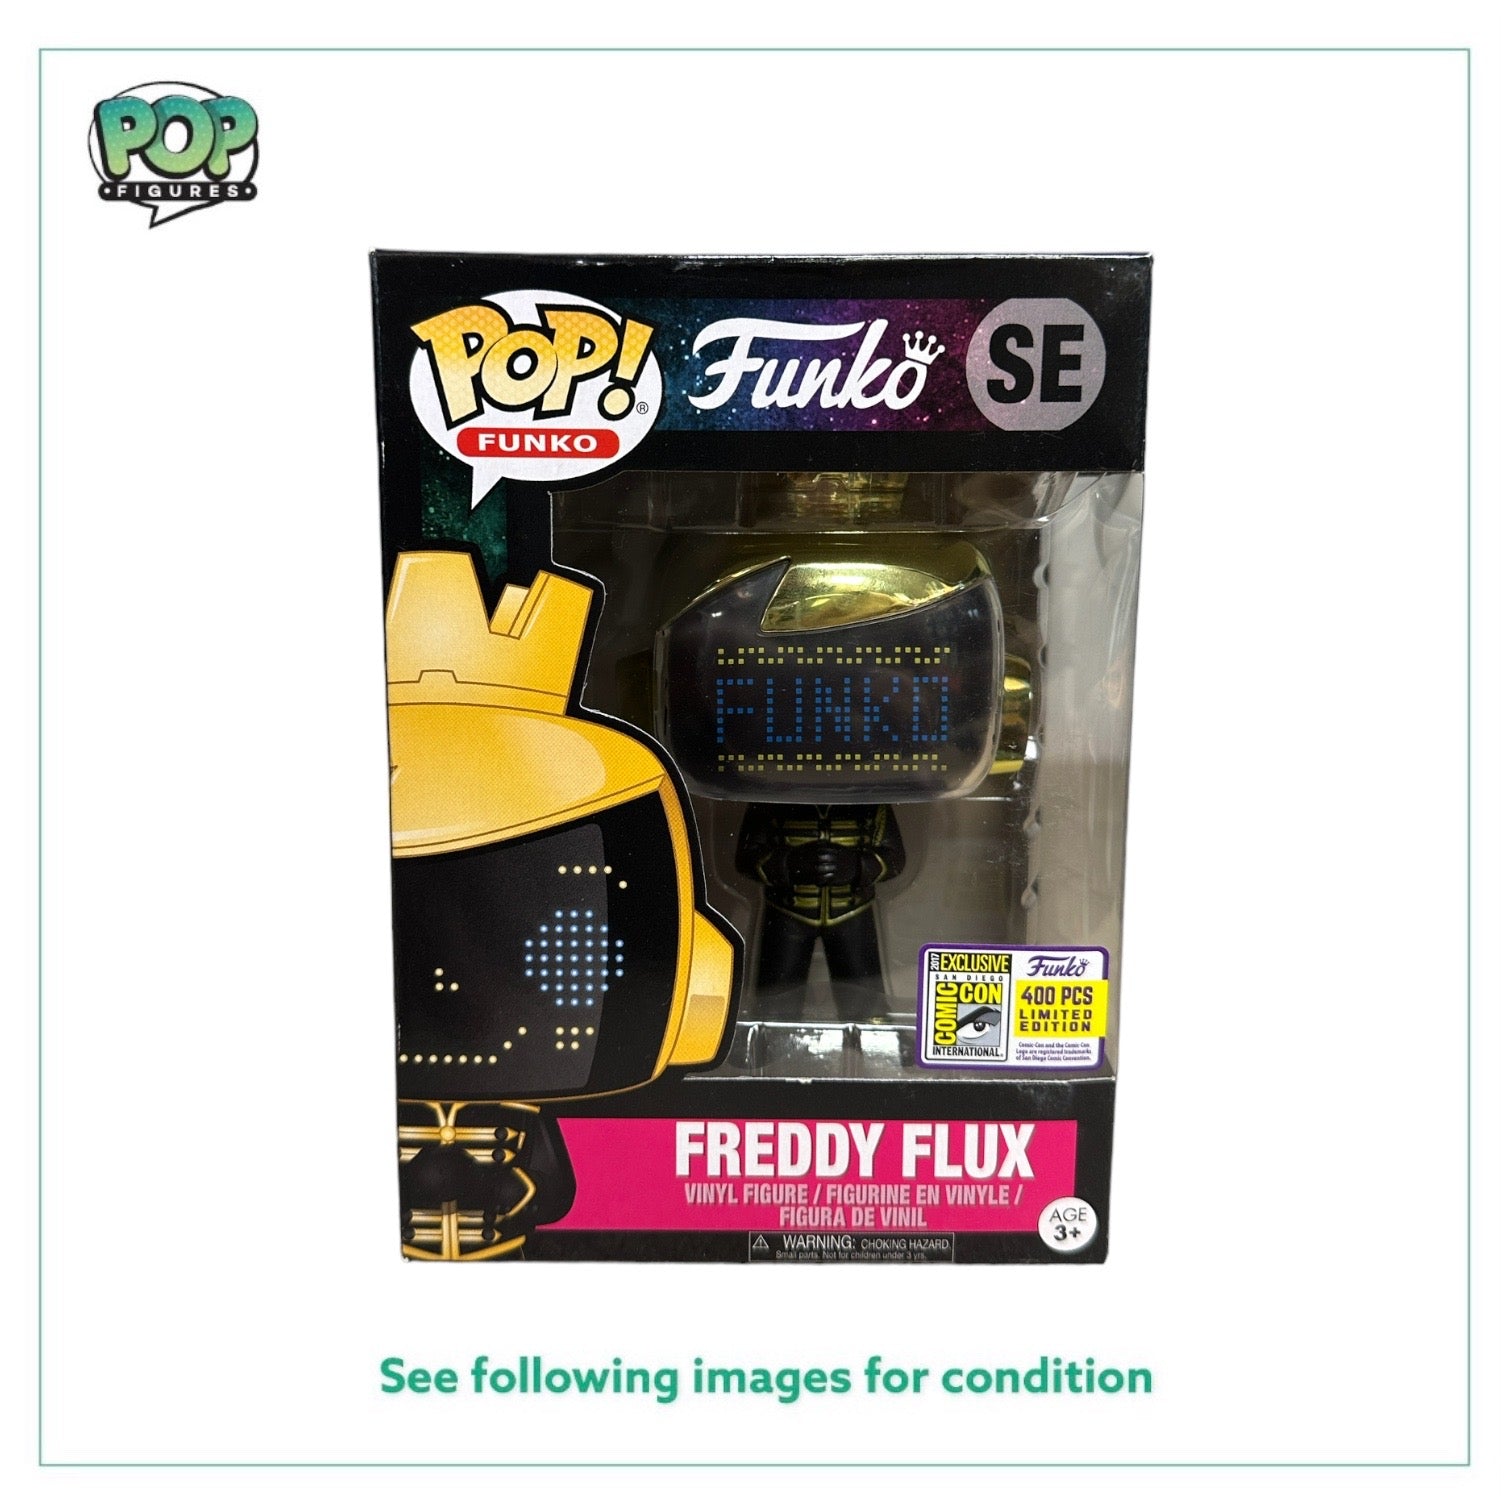 Freddy Flux Quantum Funko Pop! - SDCC 2017 Exclusive LE400 Pcs - Condition 7/10